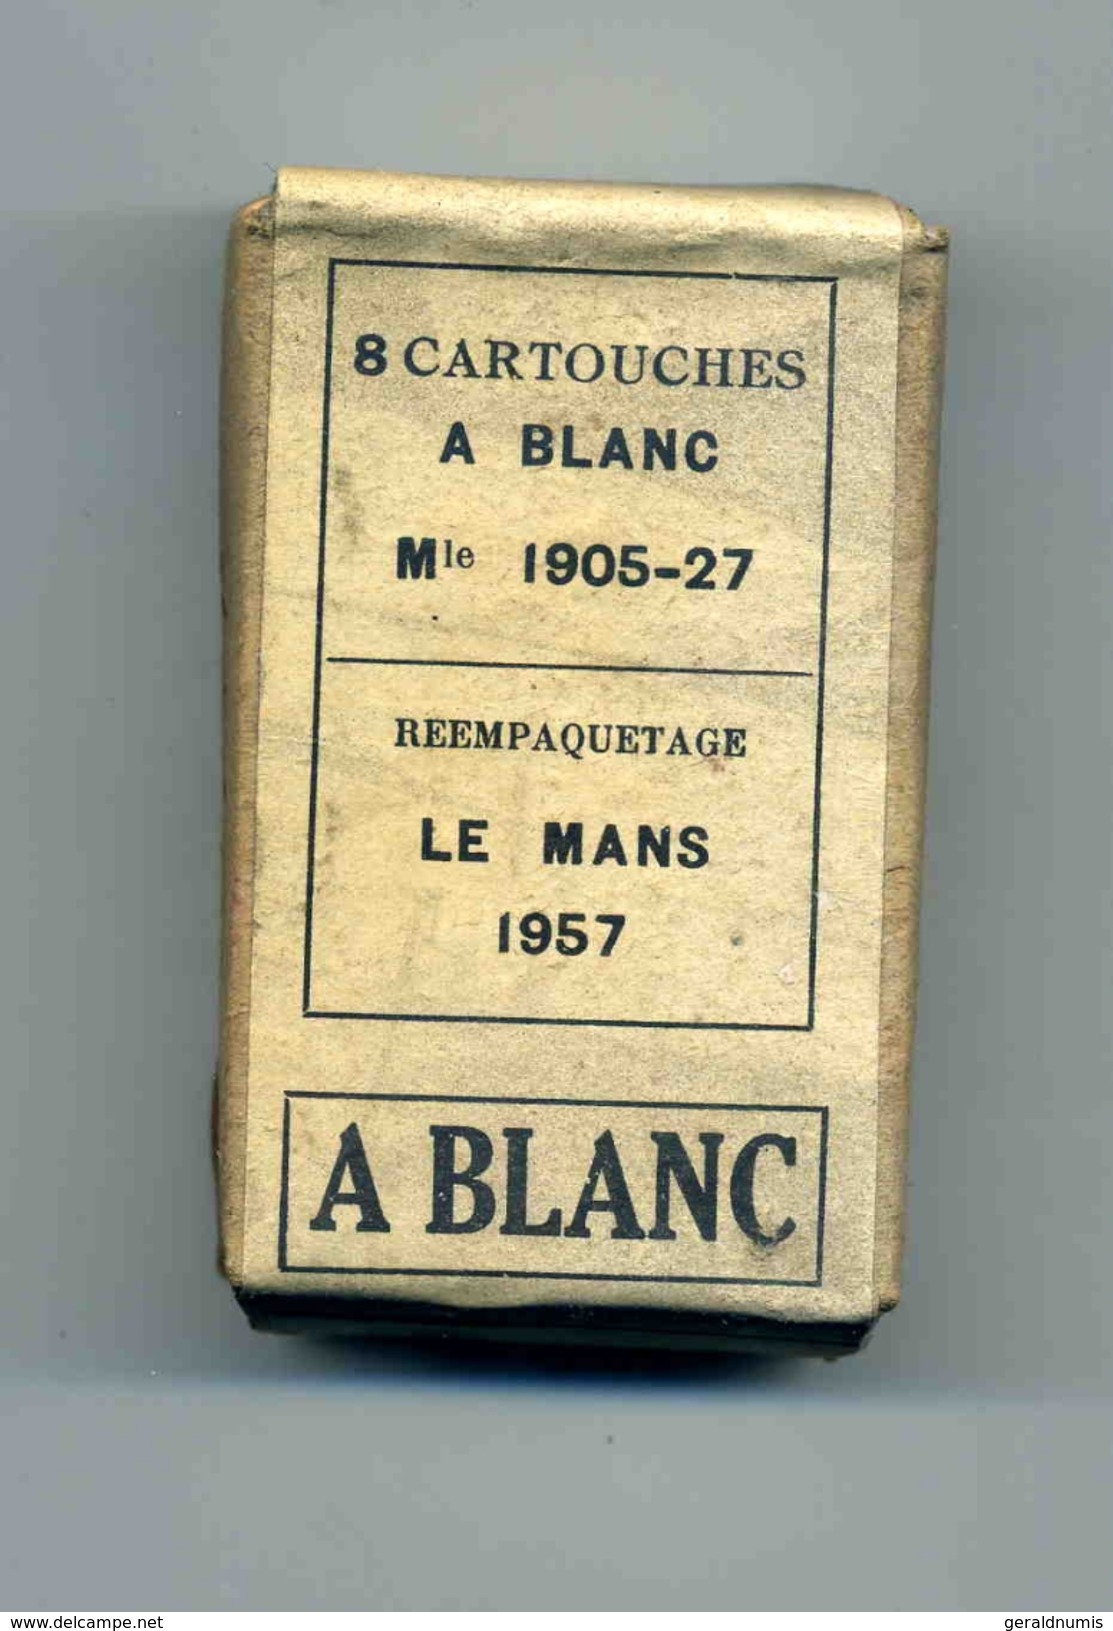 Une Boite De Cartouches à Blanc Mle 1905-27 Reempaquetage Le Mans 1957 Pour Fusil Lebel/Berthier - Armes Neutralisées